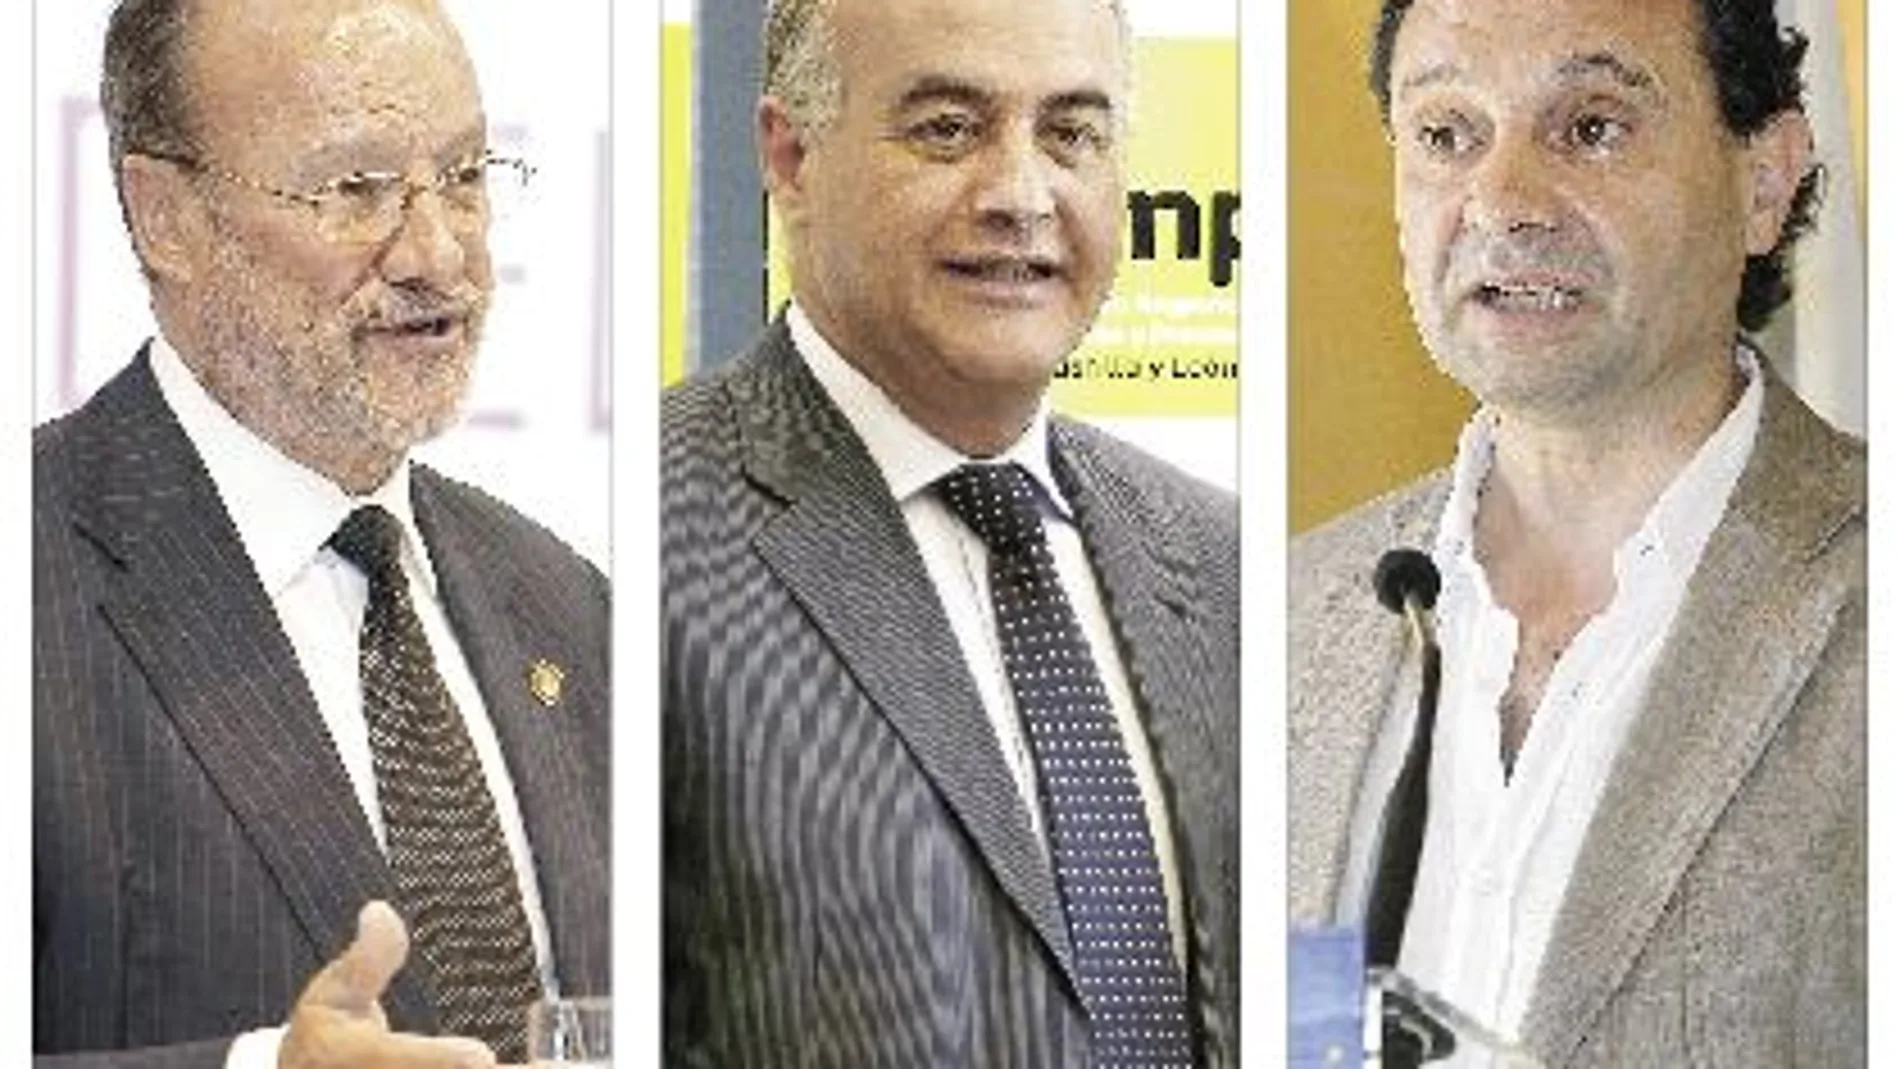 Los alcaldes de Valladolid, Javier León de la Riva; Ávila, Miguel Ángel García Nieto; y Segovia, Pedro Arahuetes